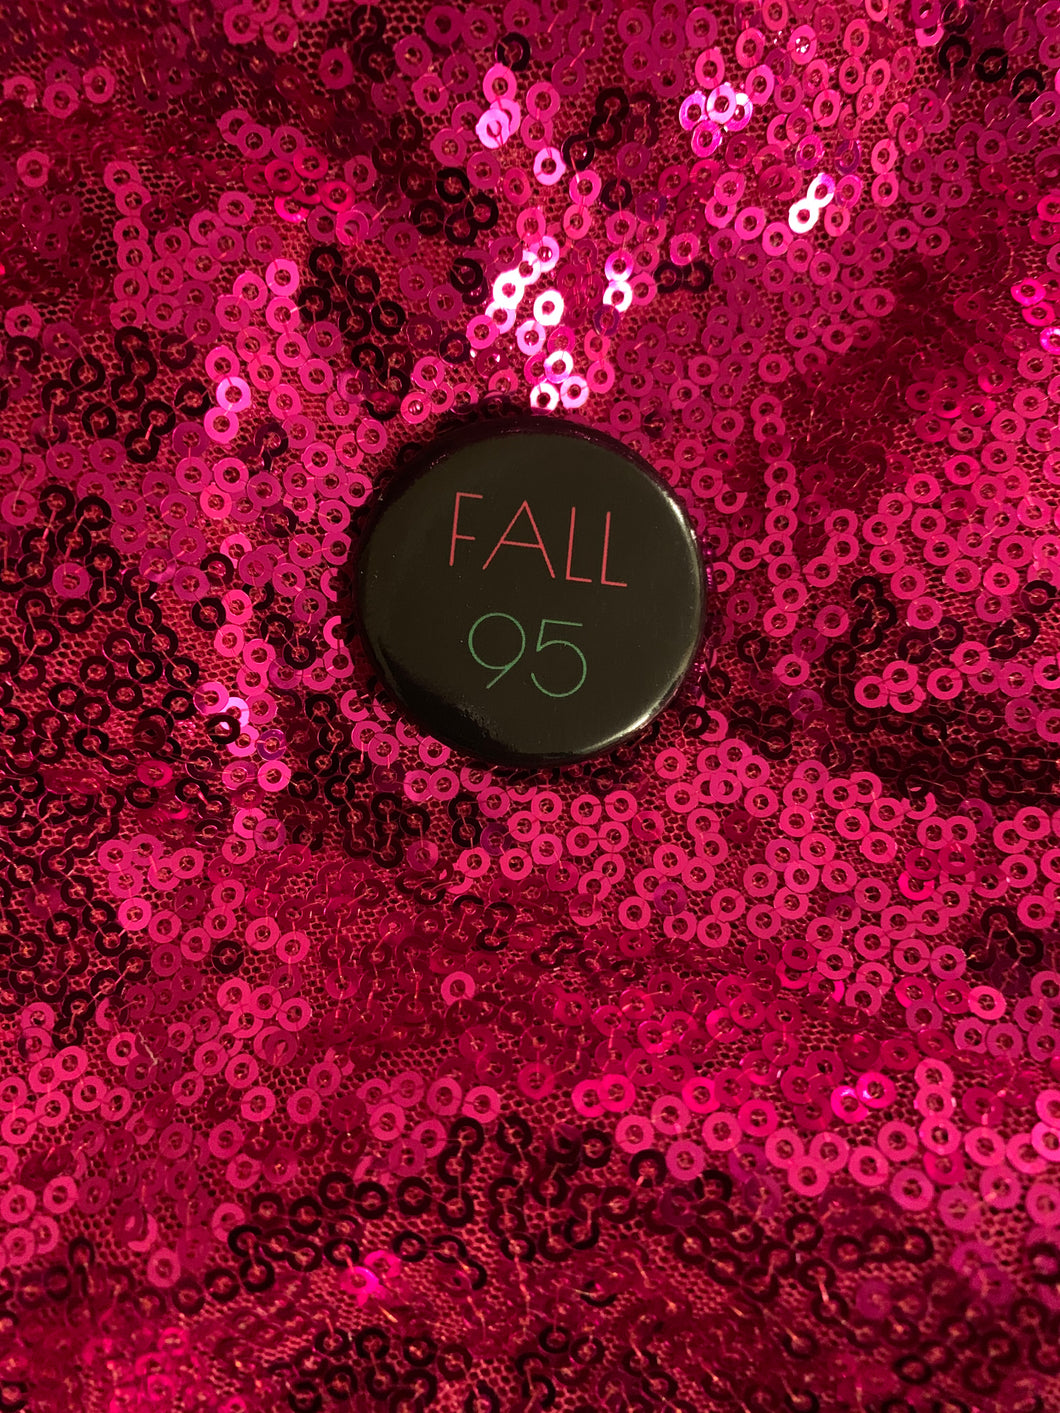 Pretty Fall  95 Button